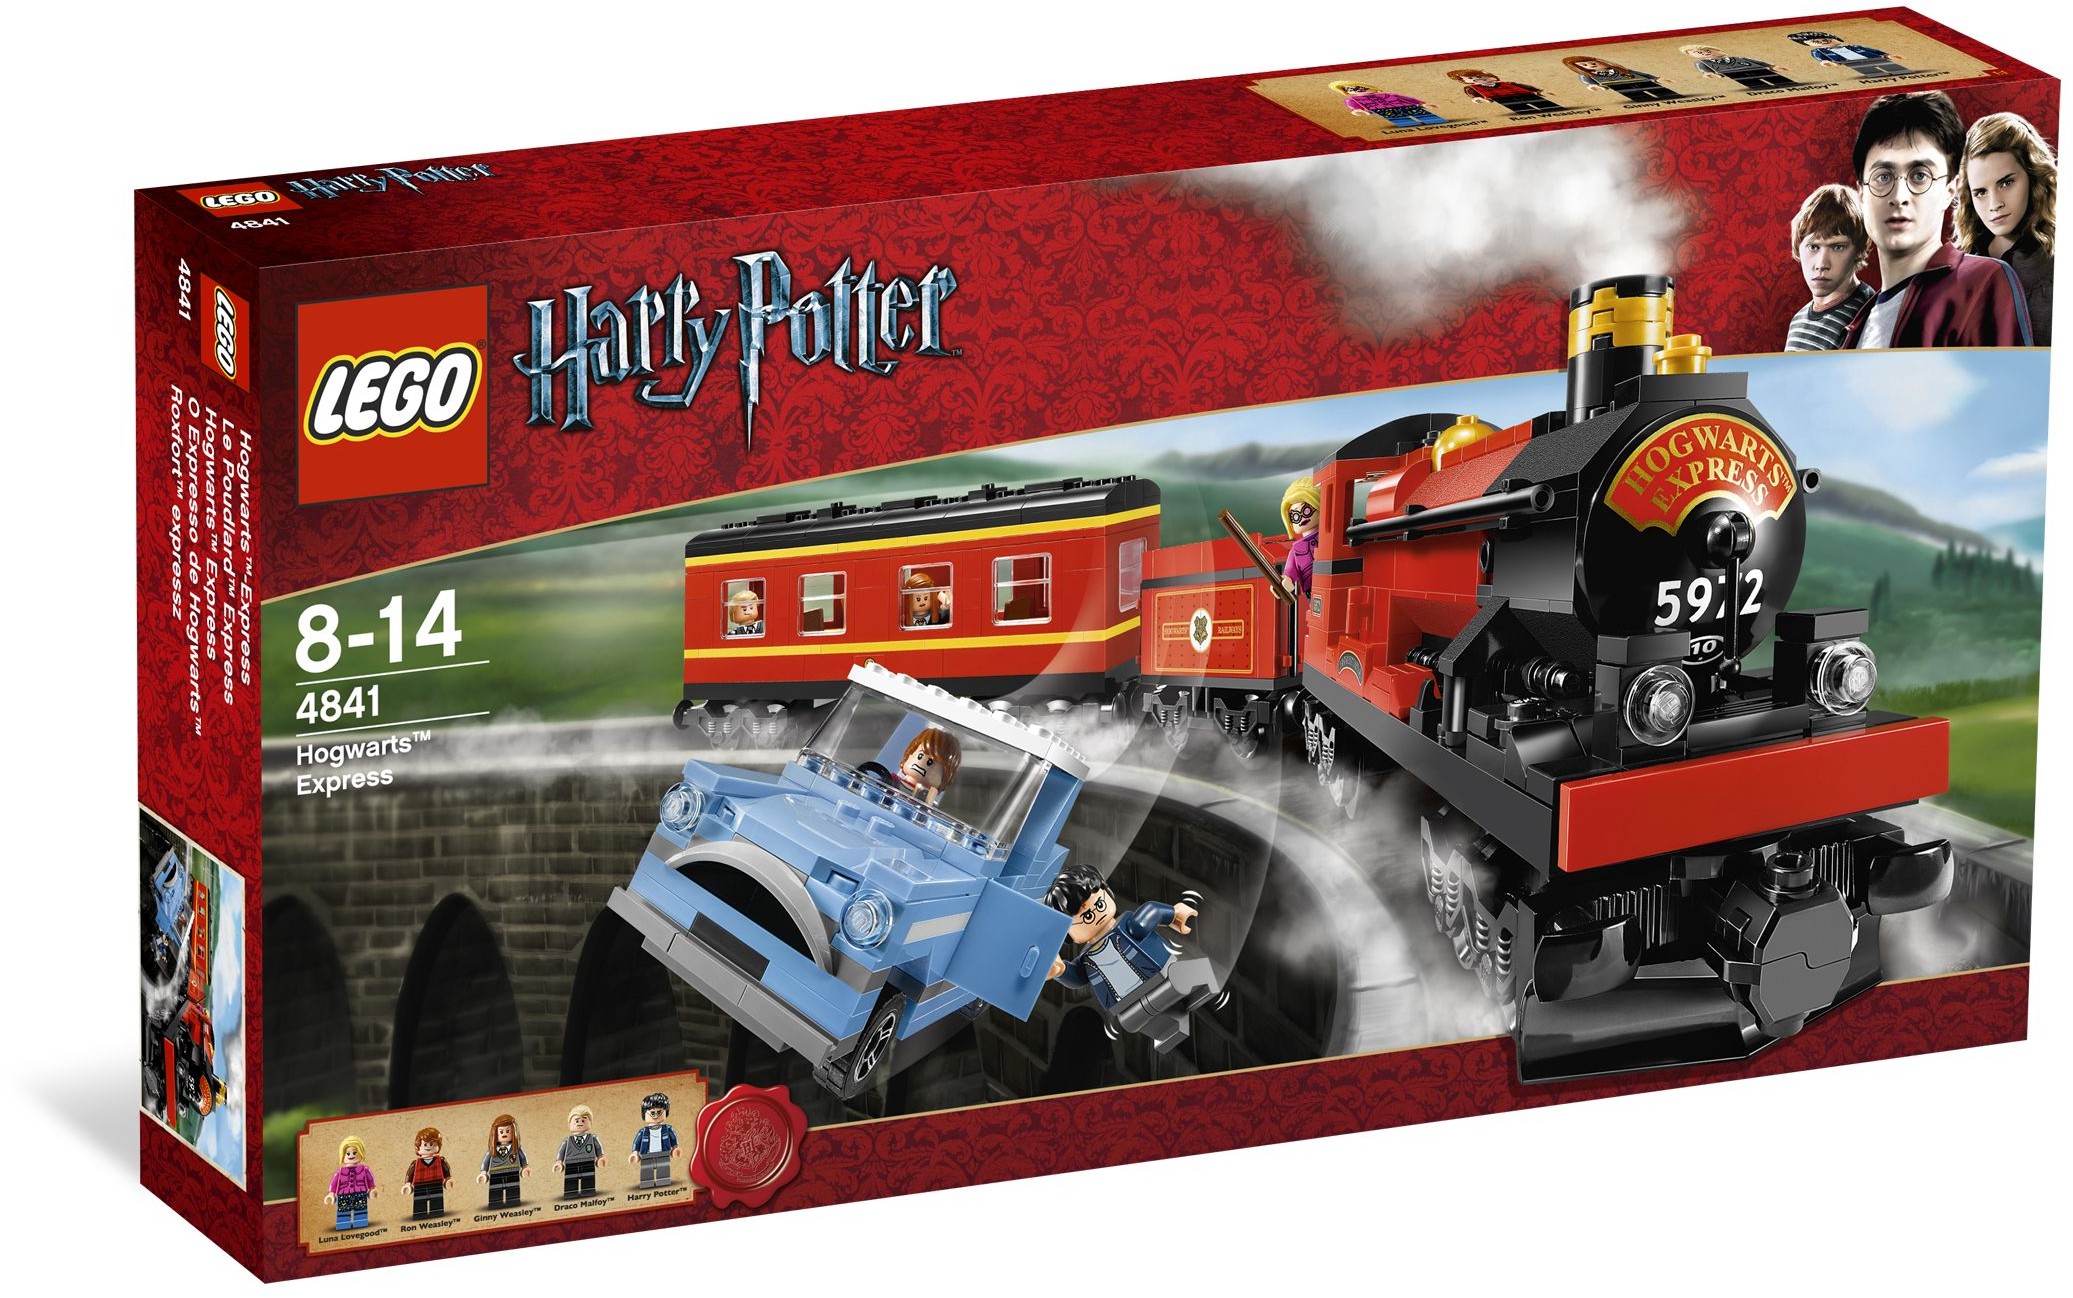 LEGO Harry Potter 4841 Hogwarts